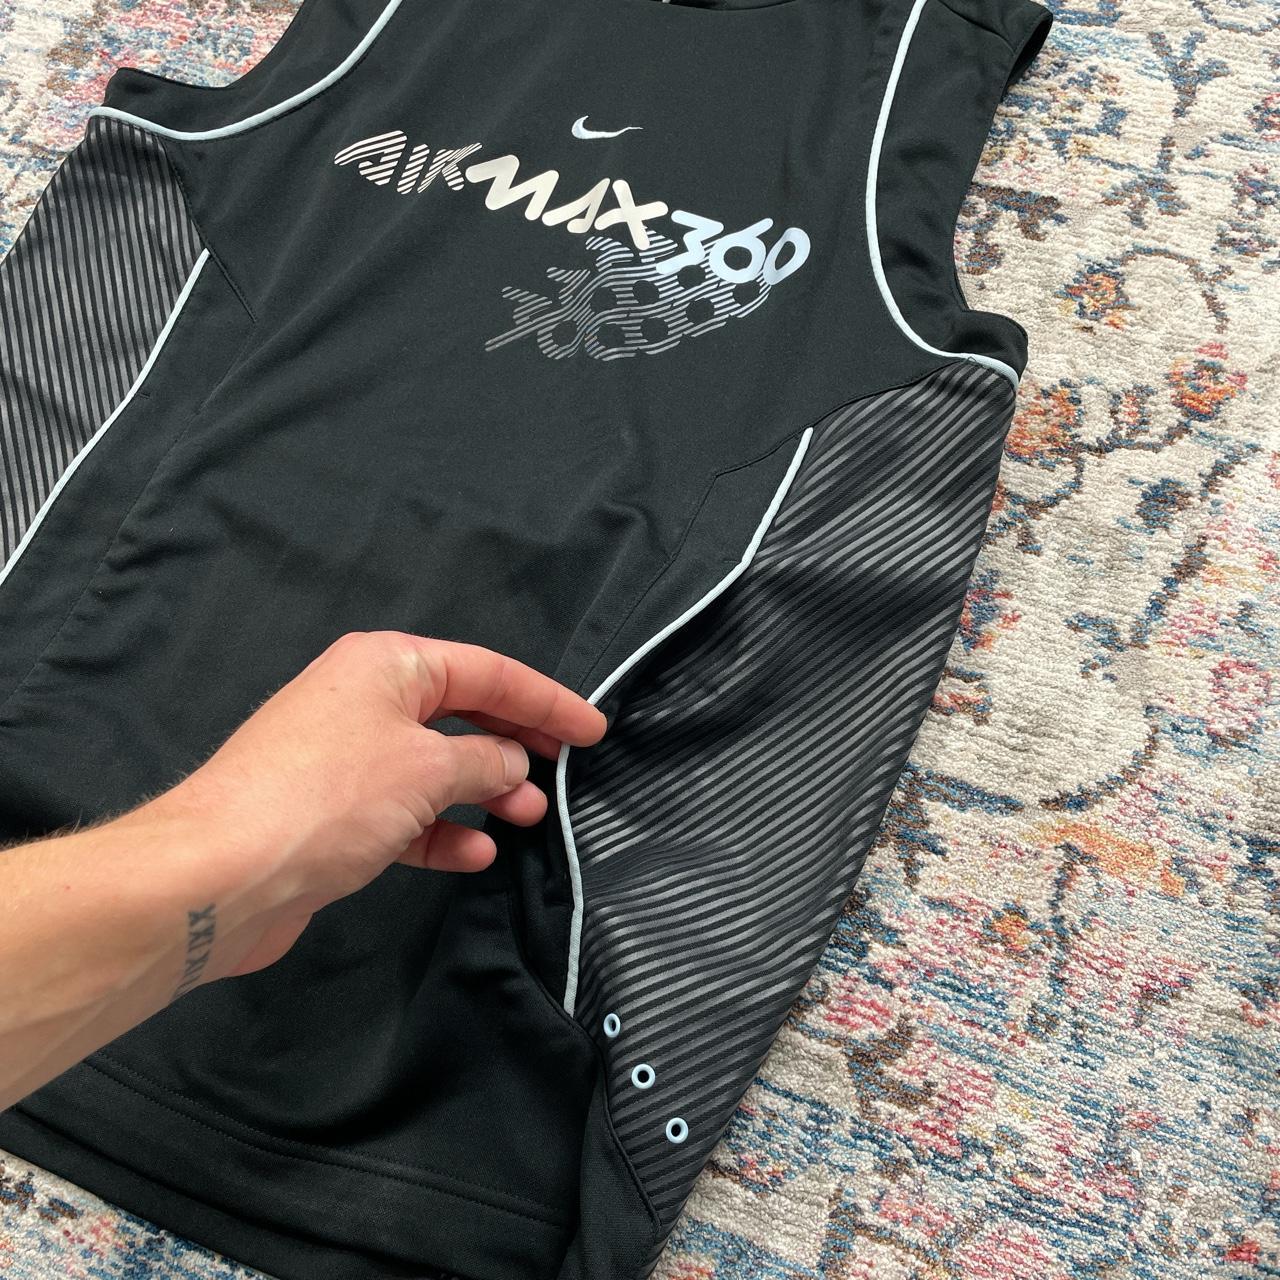 Nike Air Max 360 Black Vest Jacket